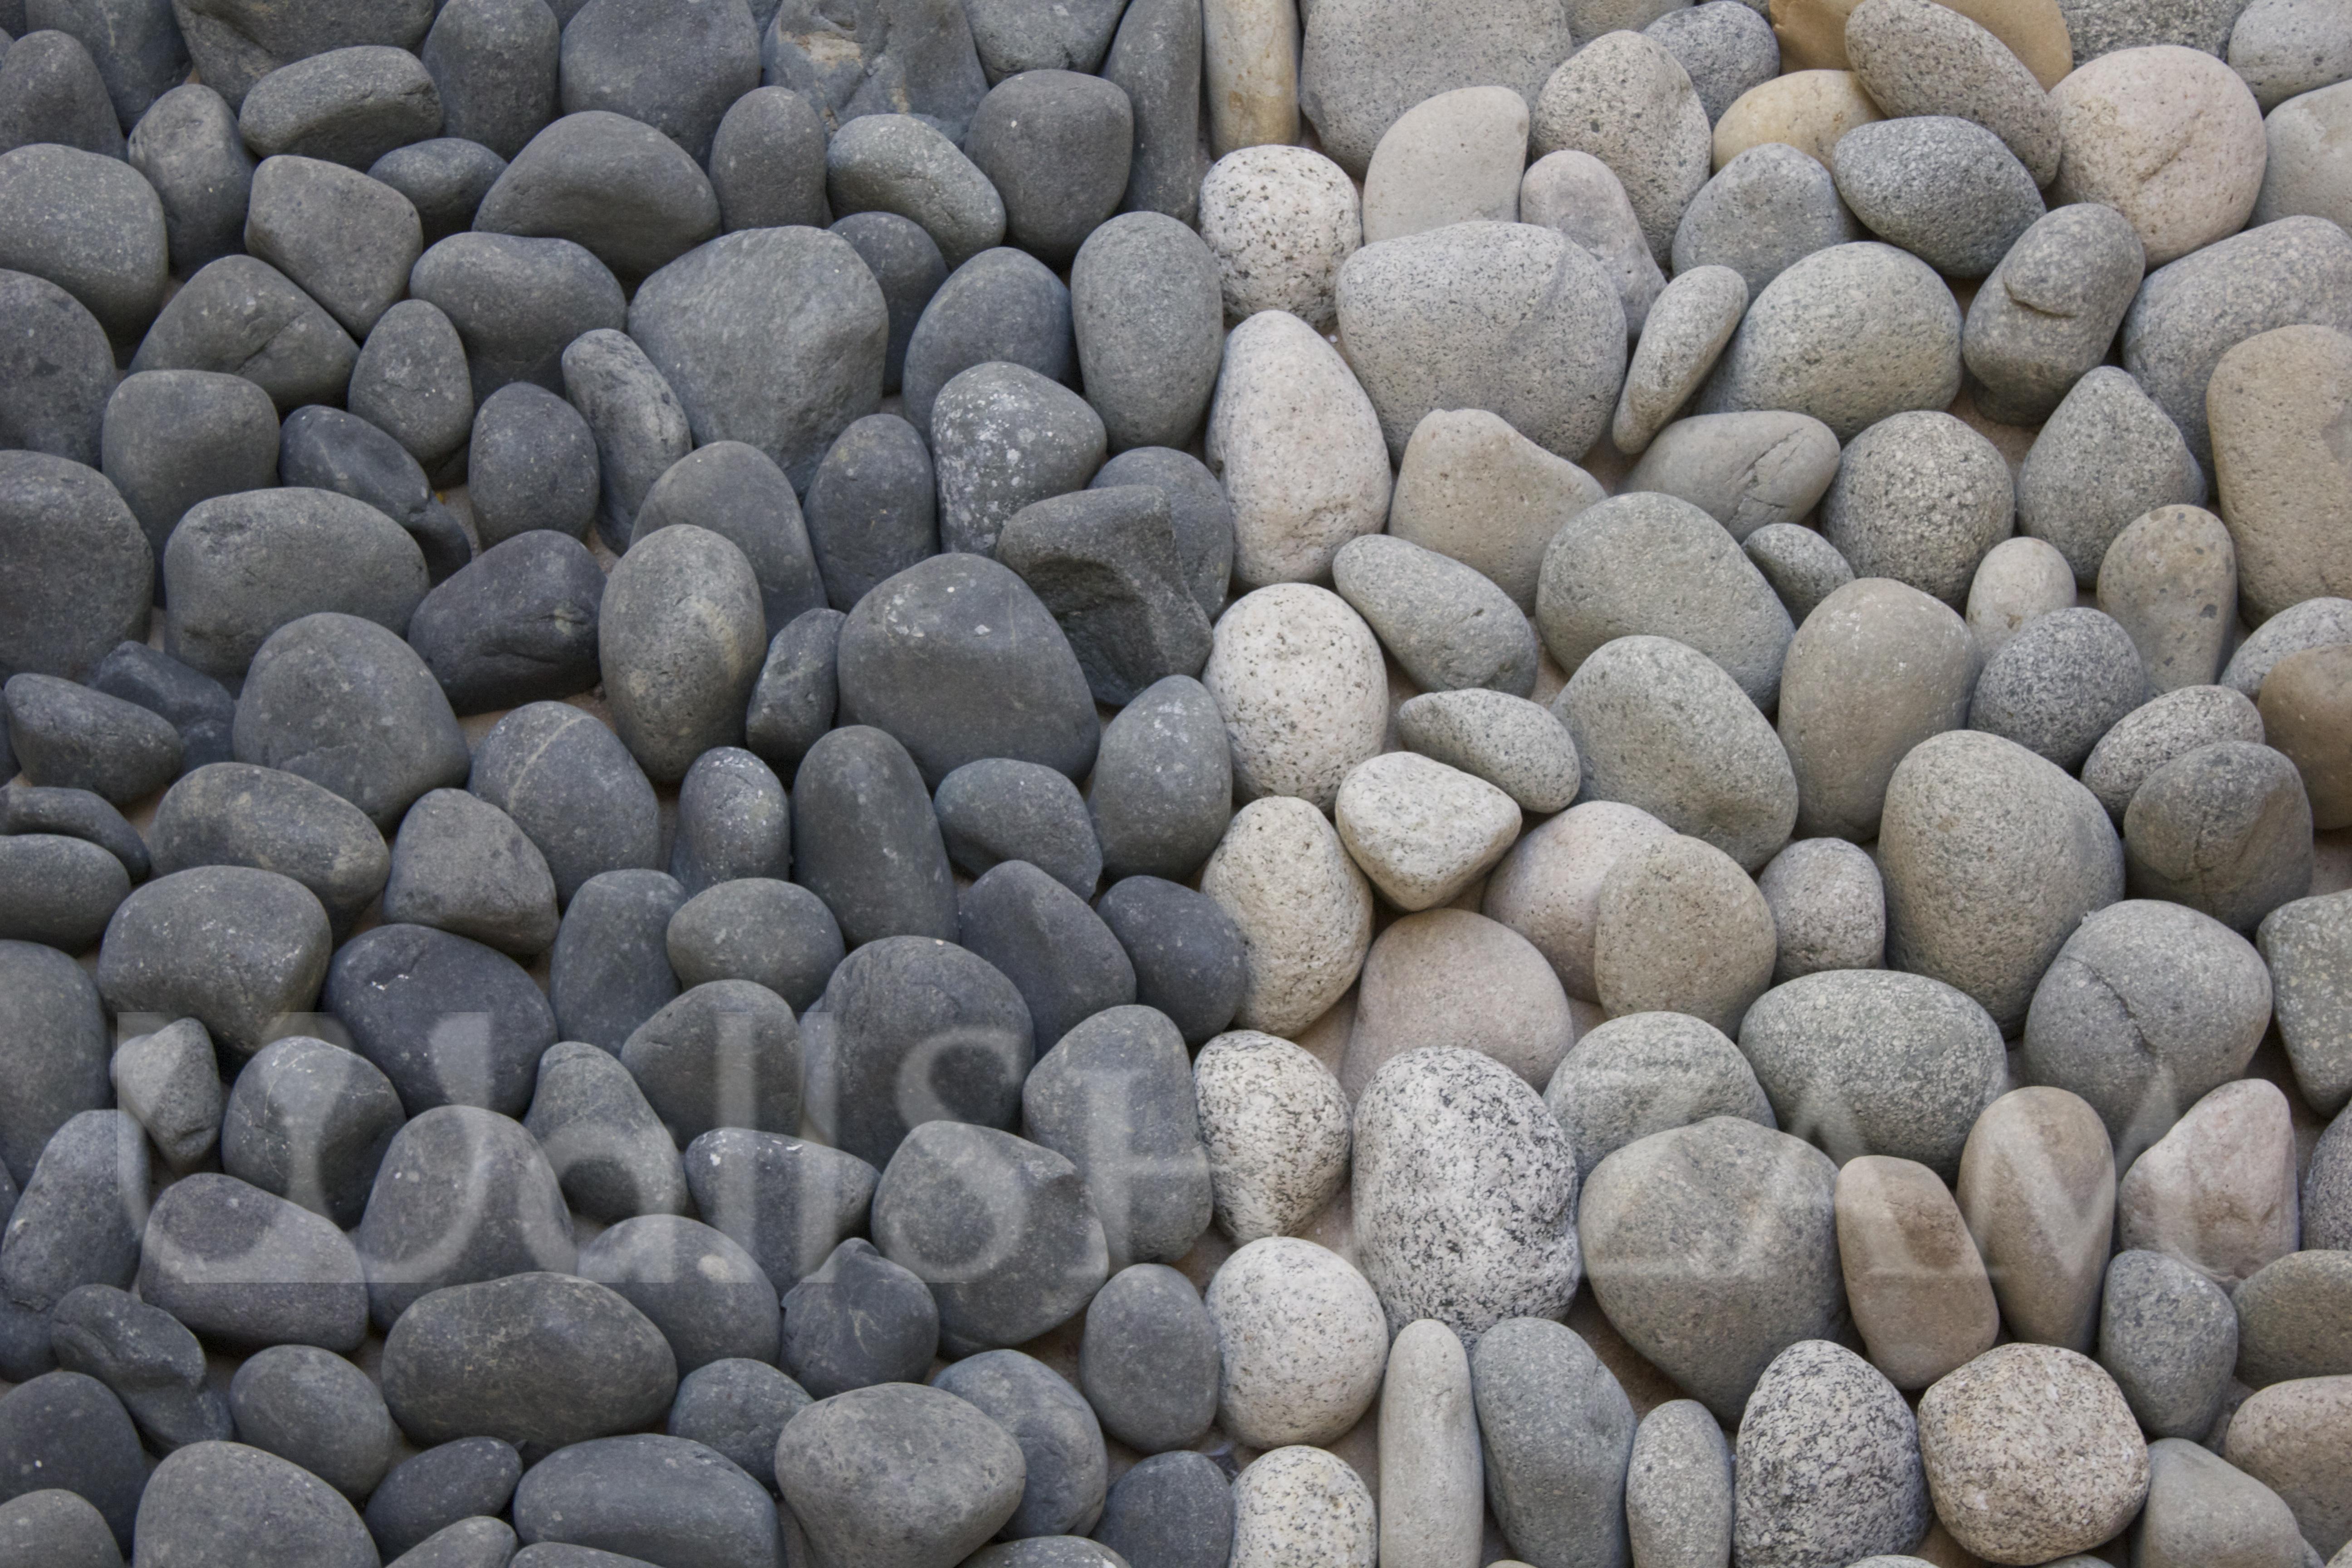 Pebbles in grey